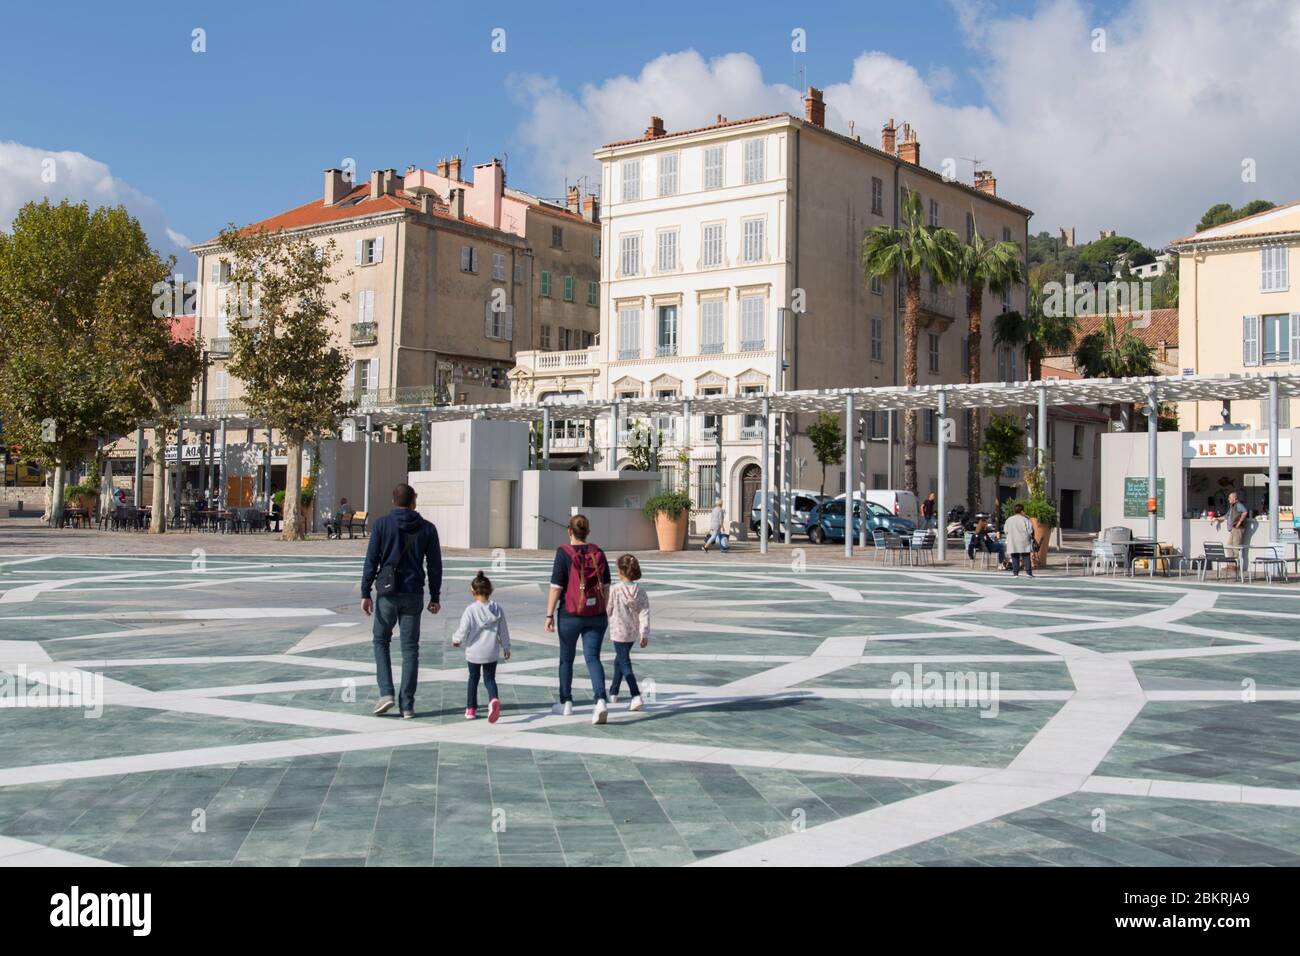 Frankreich, Var, Hyeres, Place Clemenceau, recalified durch den Architekten Rudy Ricciotti, Schatten Haus, Rosenfenster, Brunnen Stockfoto